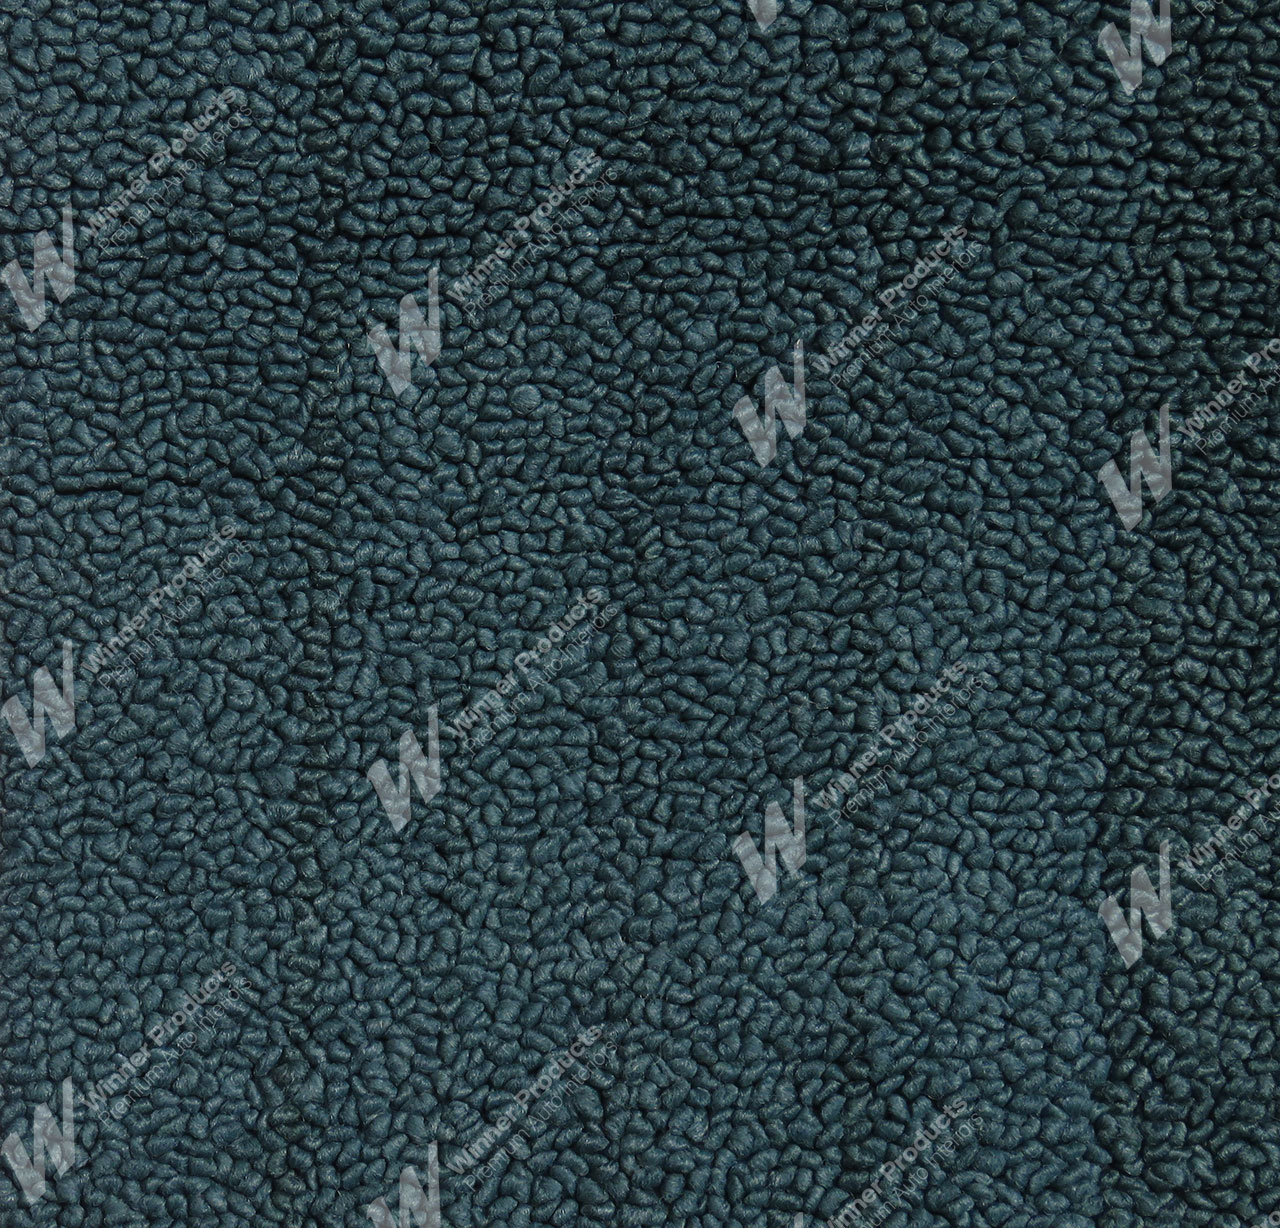 Holden Kingswood HT Kingswood Ute 13E Turquoise Mist Carpet (Image 1 of 1)